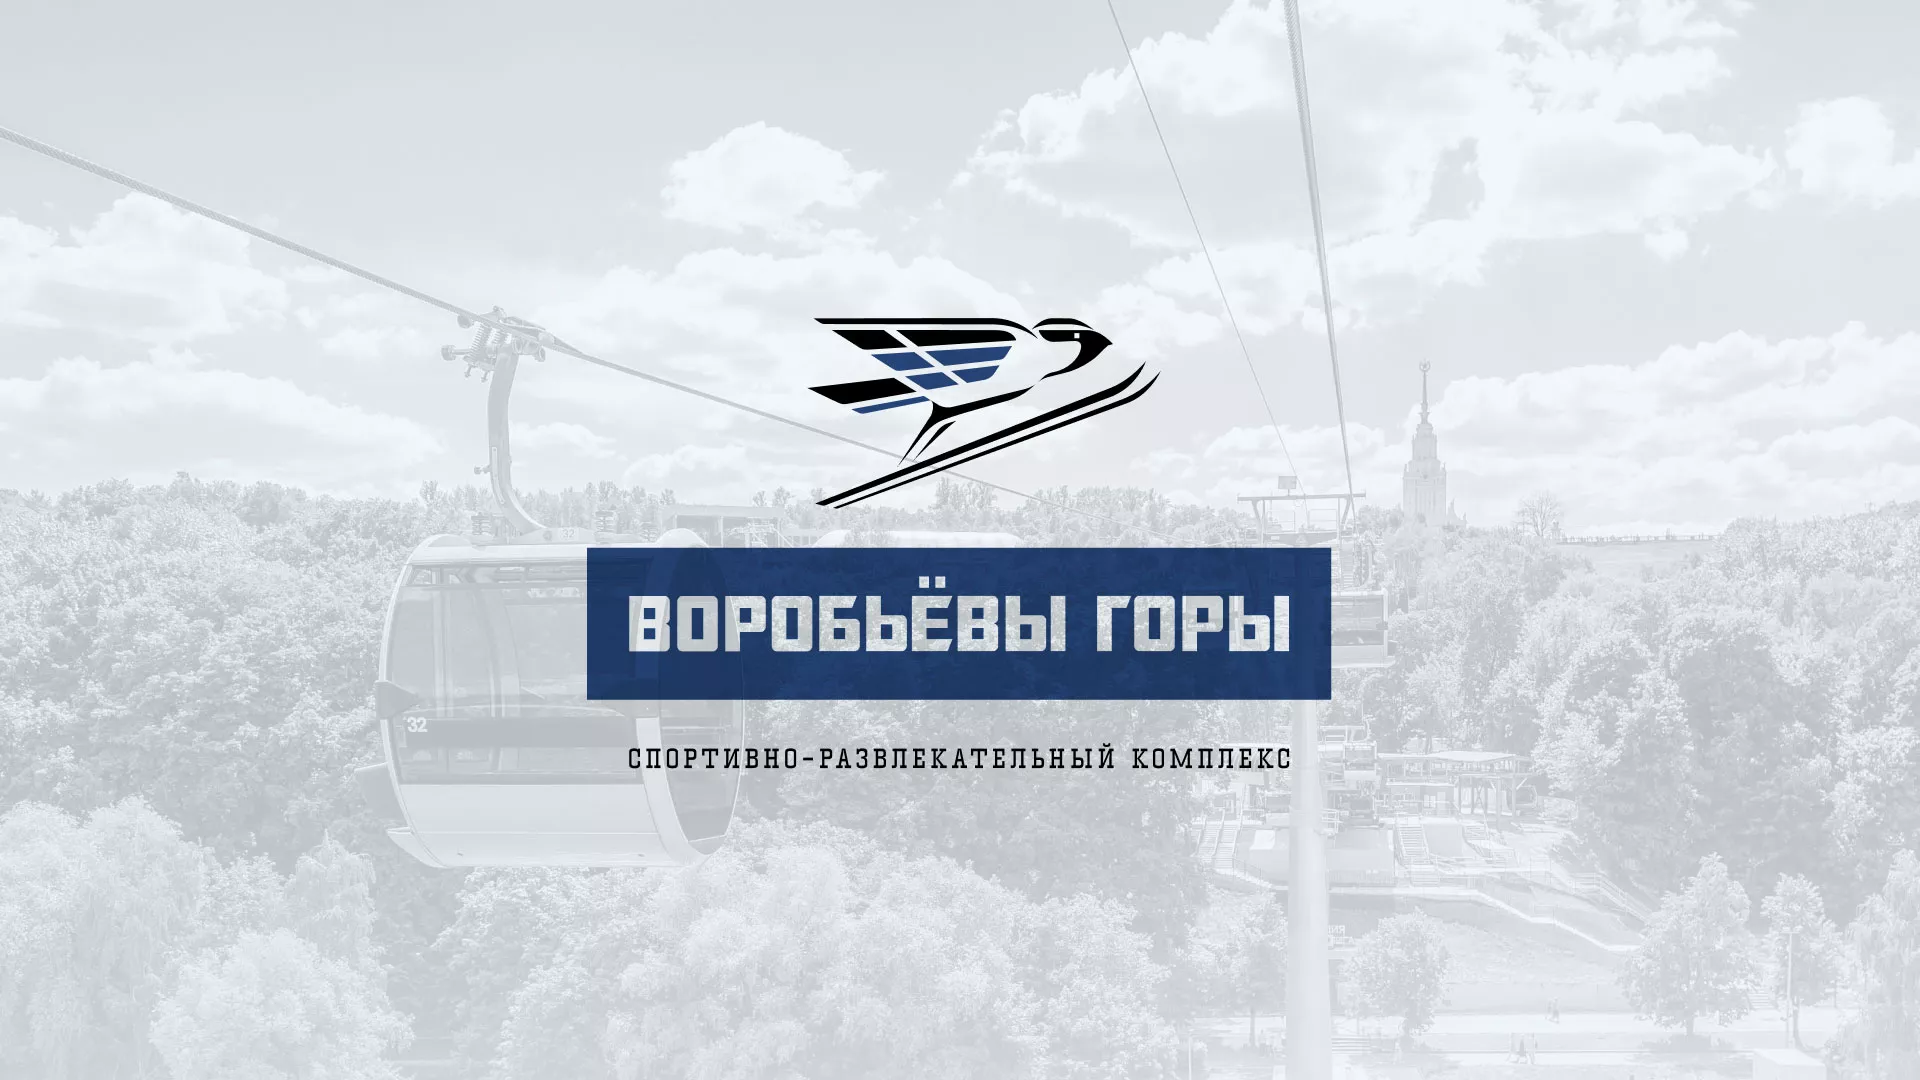 Разработка сайта в Бугуруслане для спортивно-развлекательного комплекса «Воробьёвы горы»